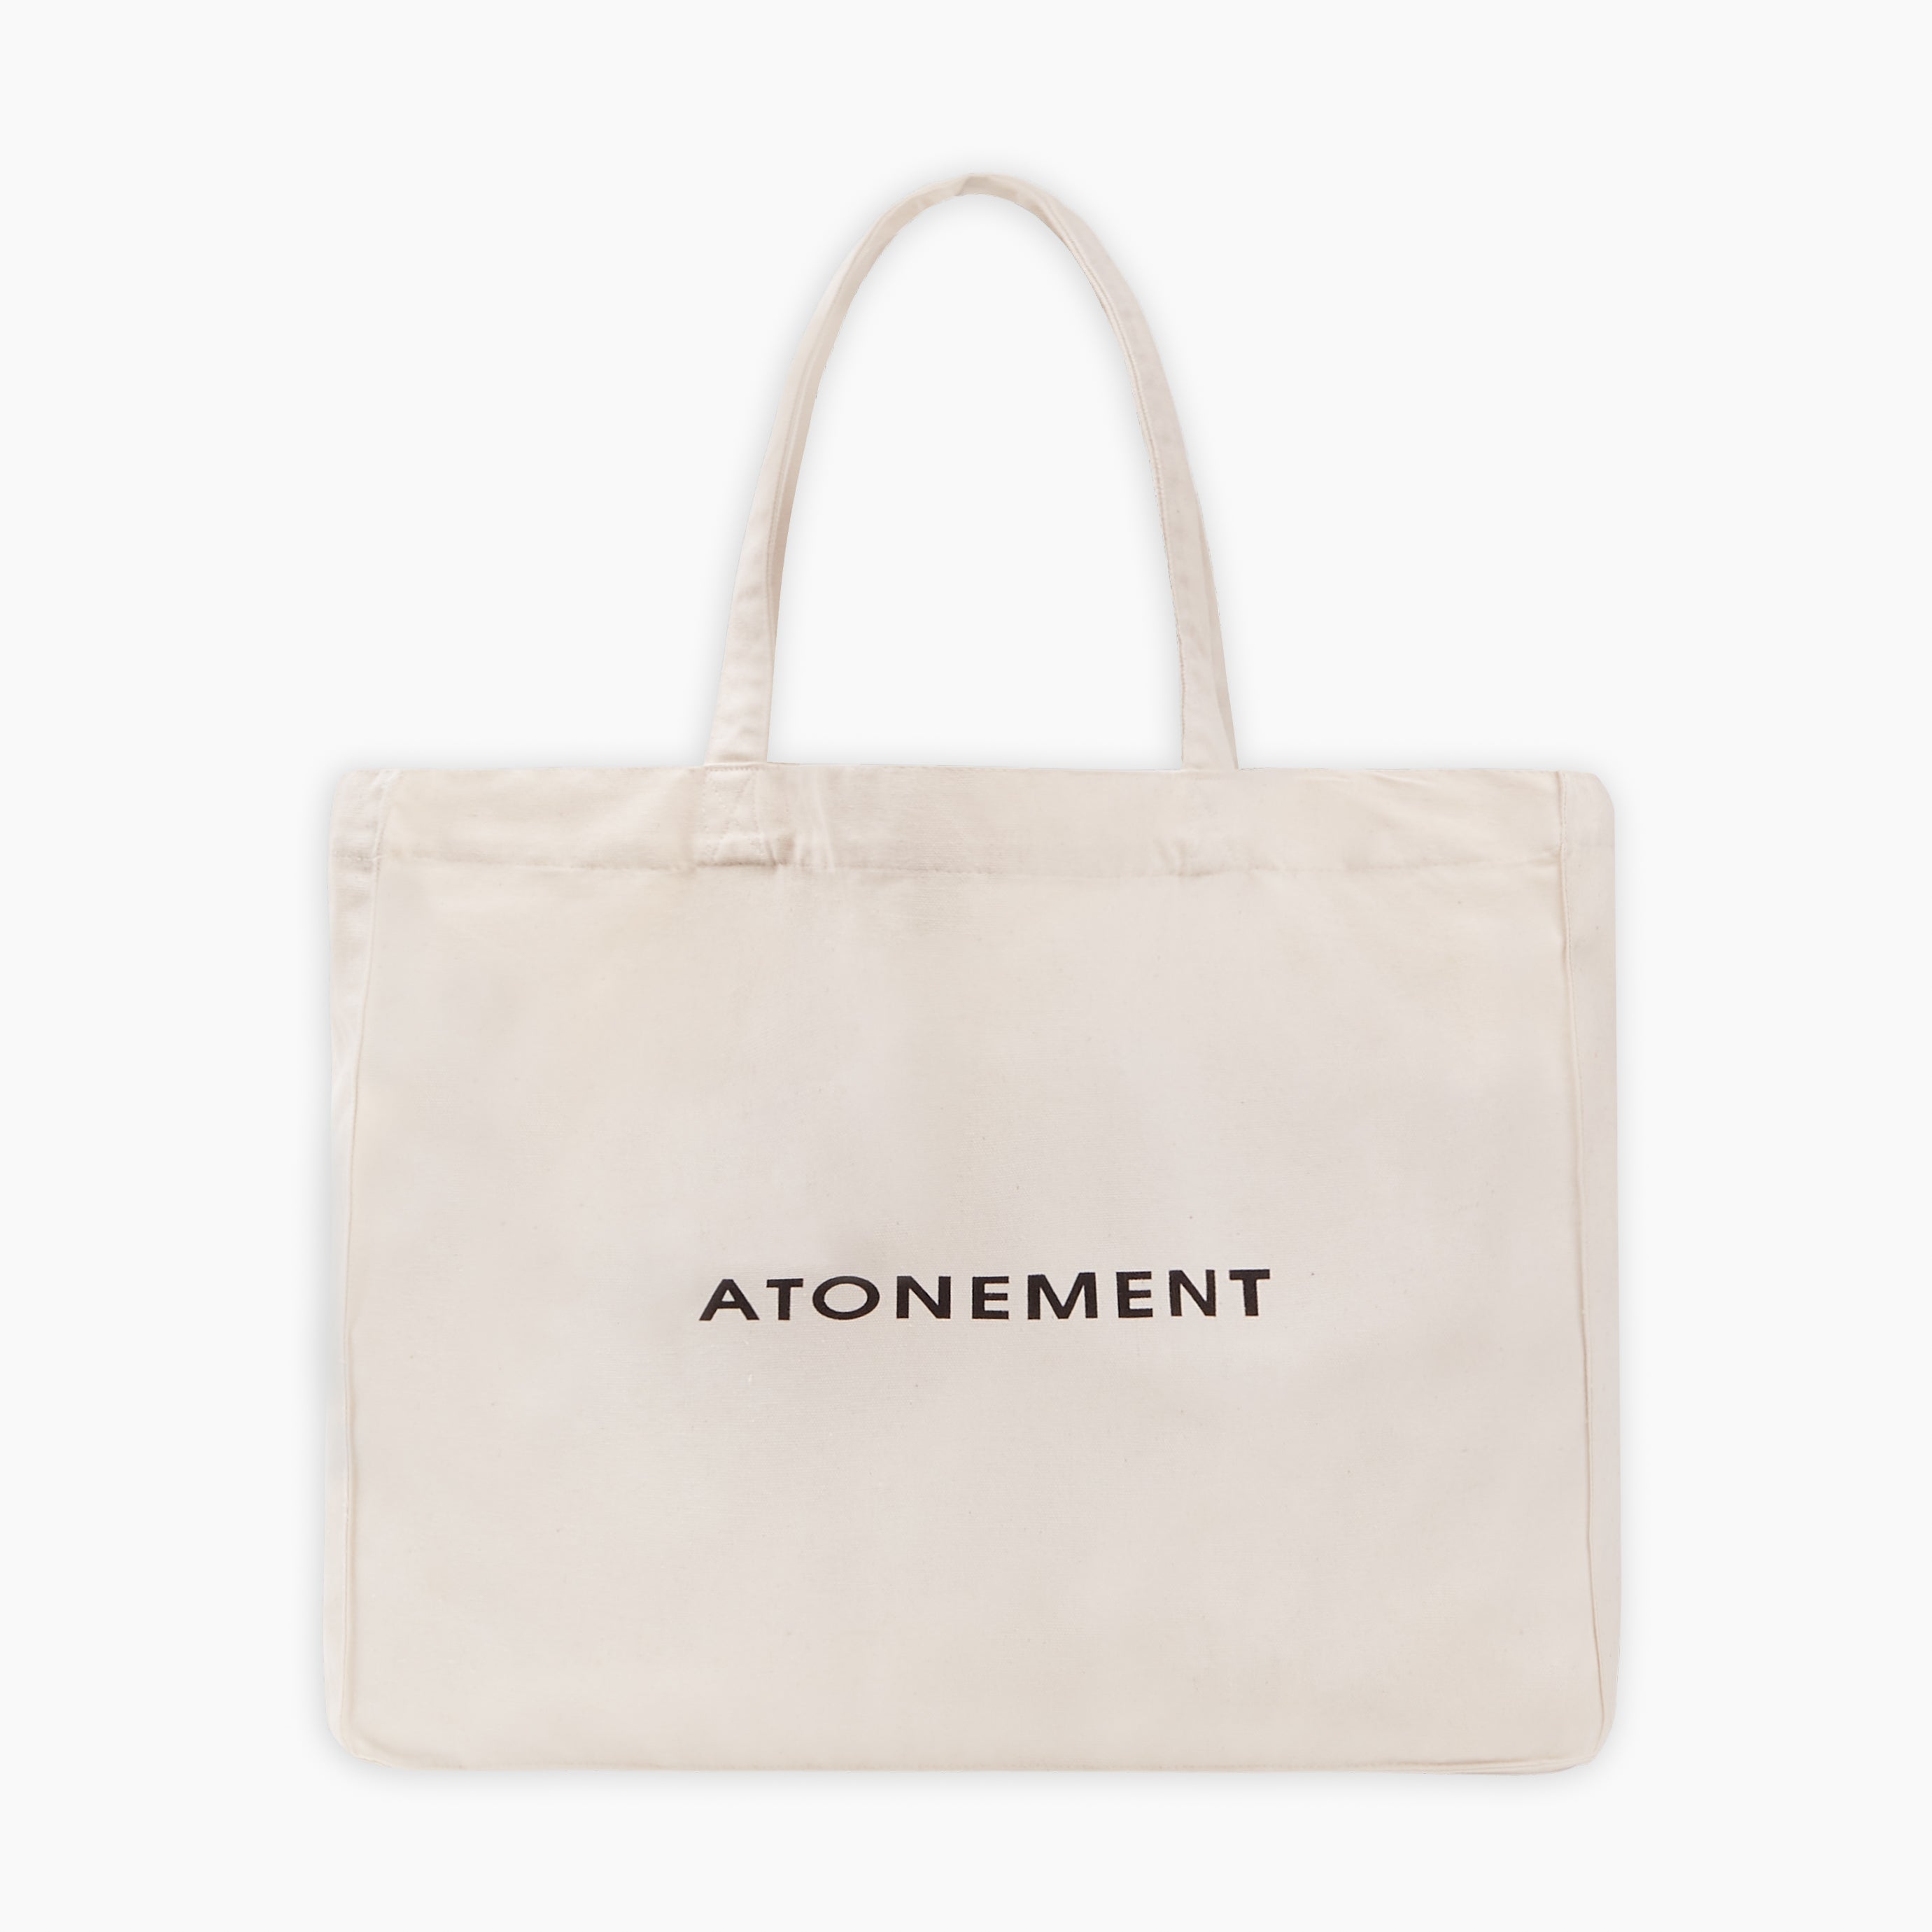 Atonement Tote Bag - Cream